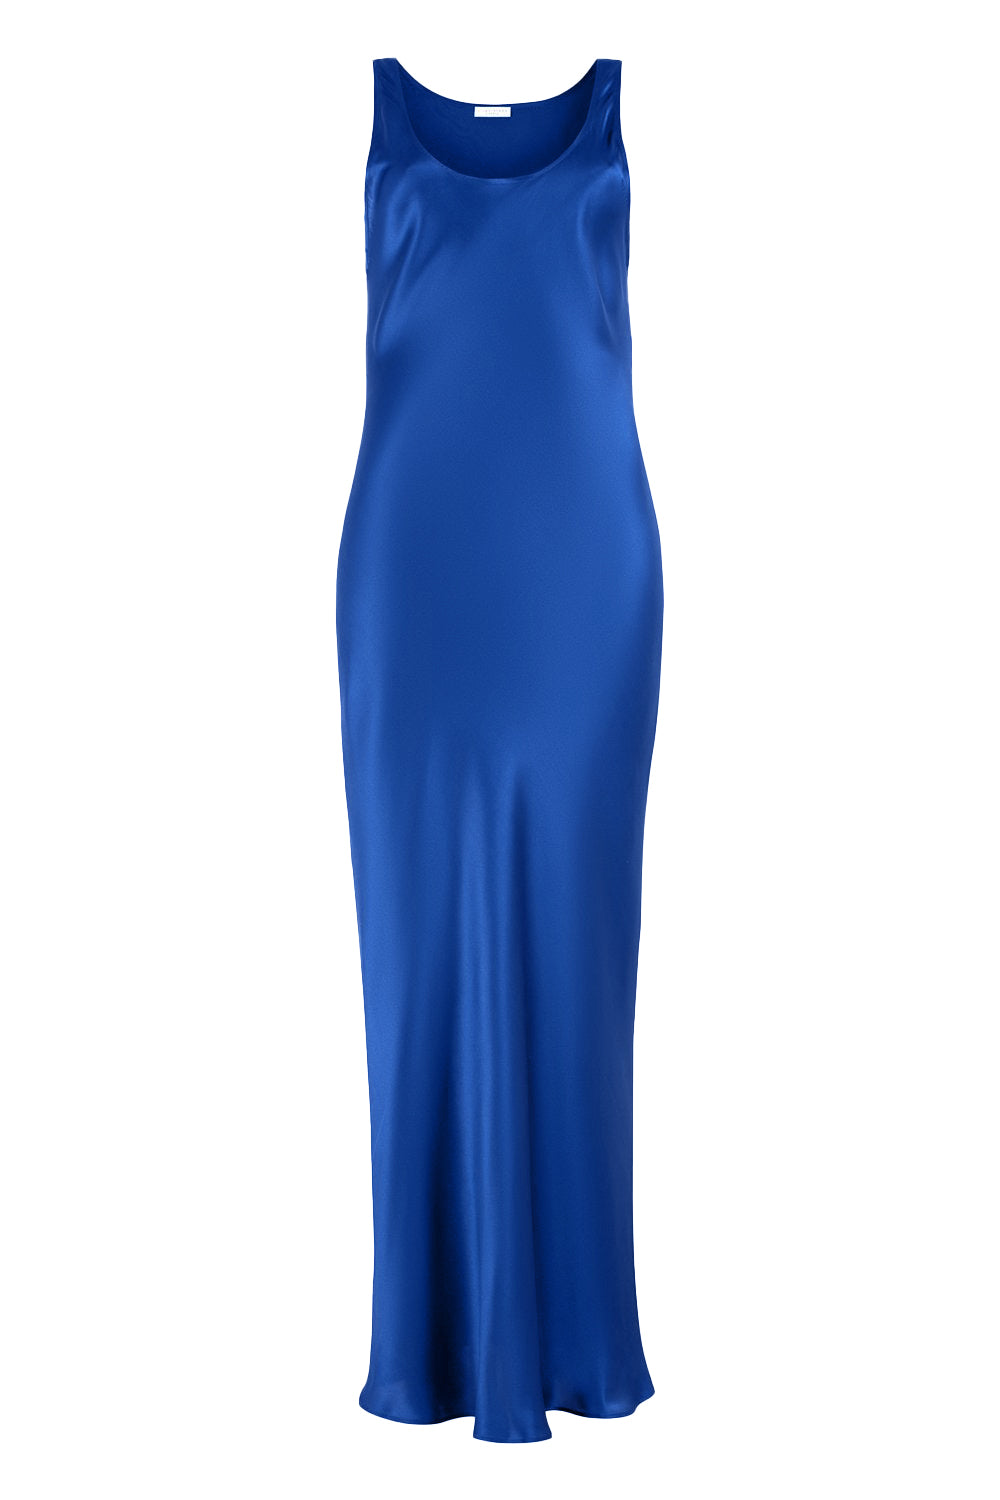 Silk Dress in Azure Blue